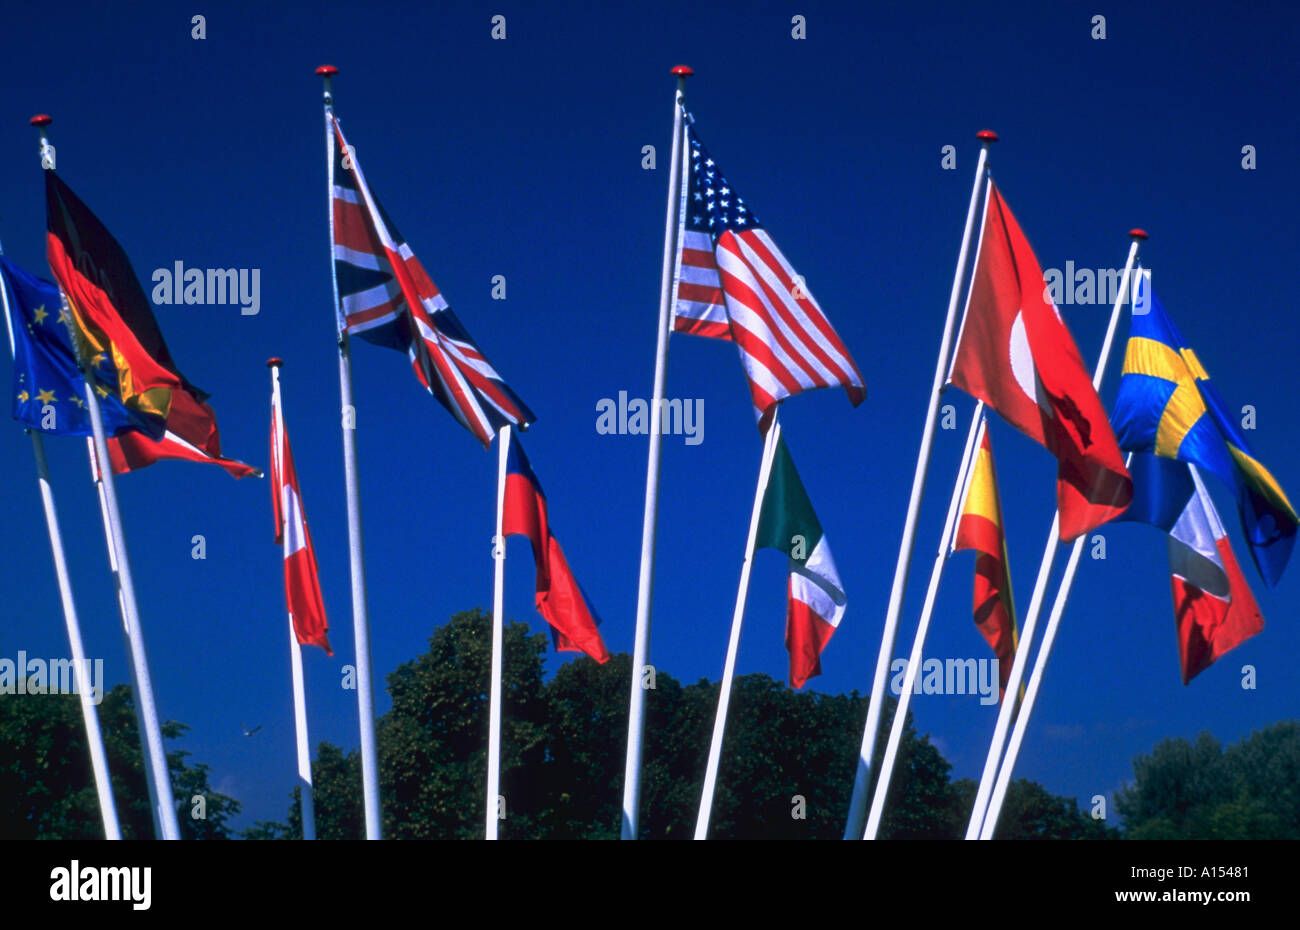 Un affichage des drapeaux internationaux soufflant de mâts de drapeau à l'extérieur Banque D'Images